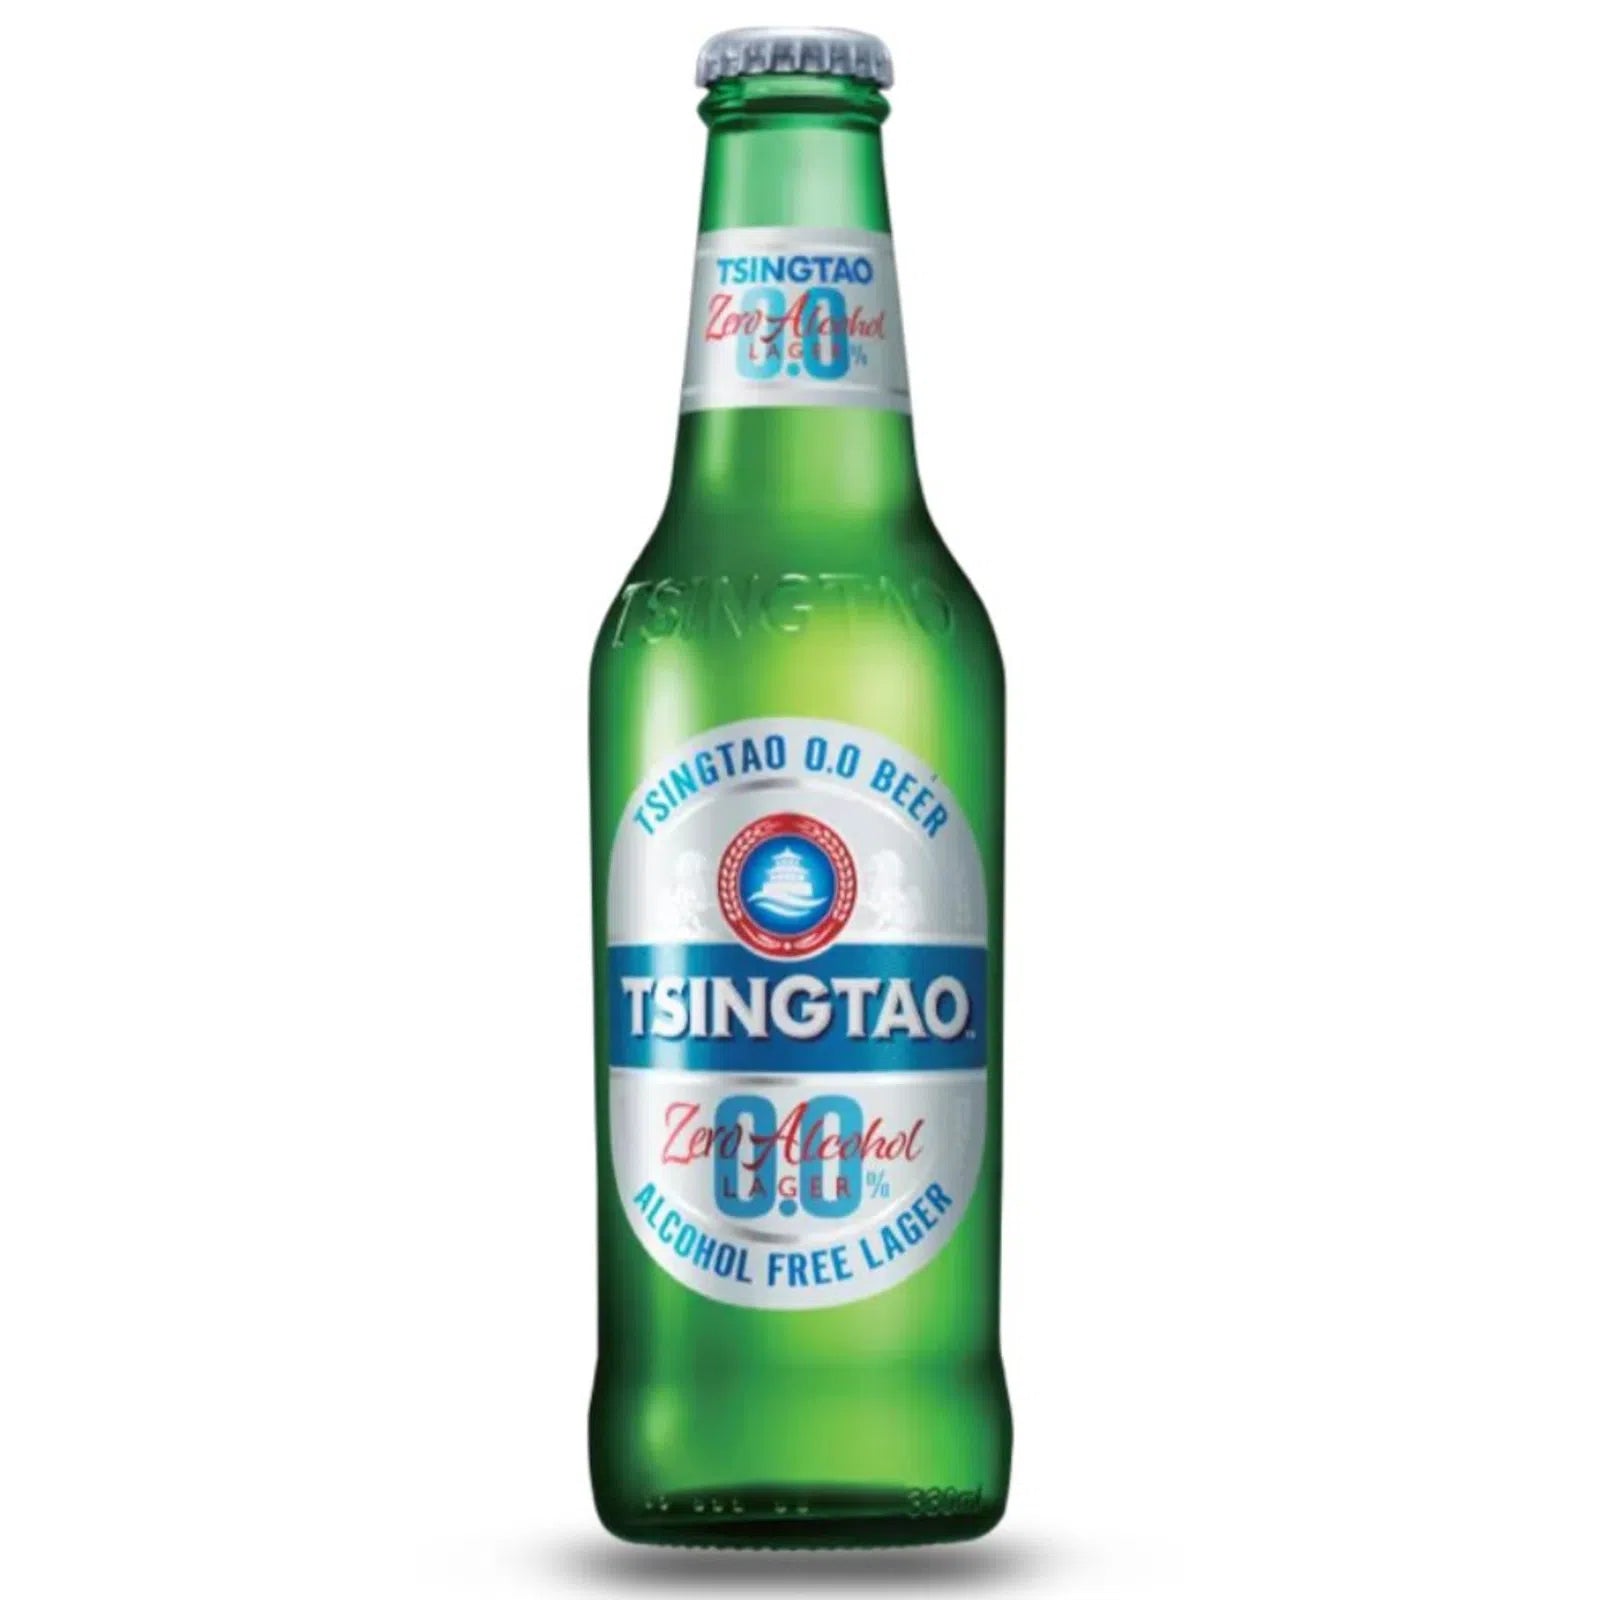 Tsingtao Zero alcohol 0,0% - Das alkoholfreie Bier aus China in der 0,33l Flasche